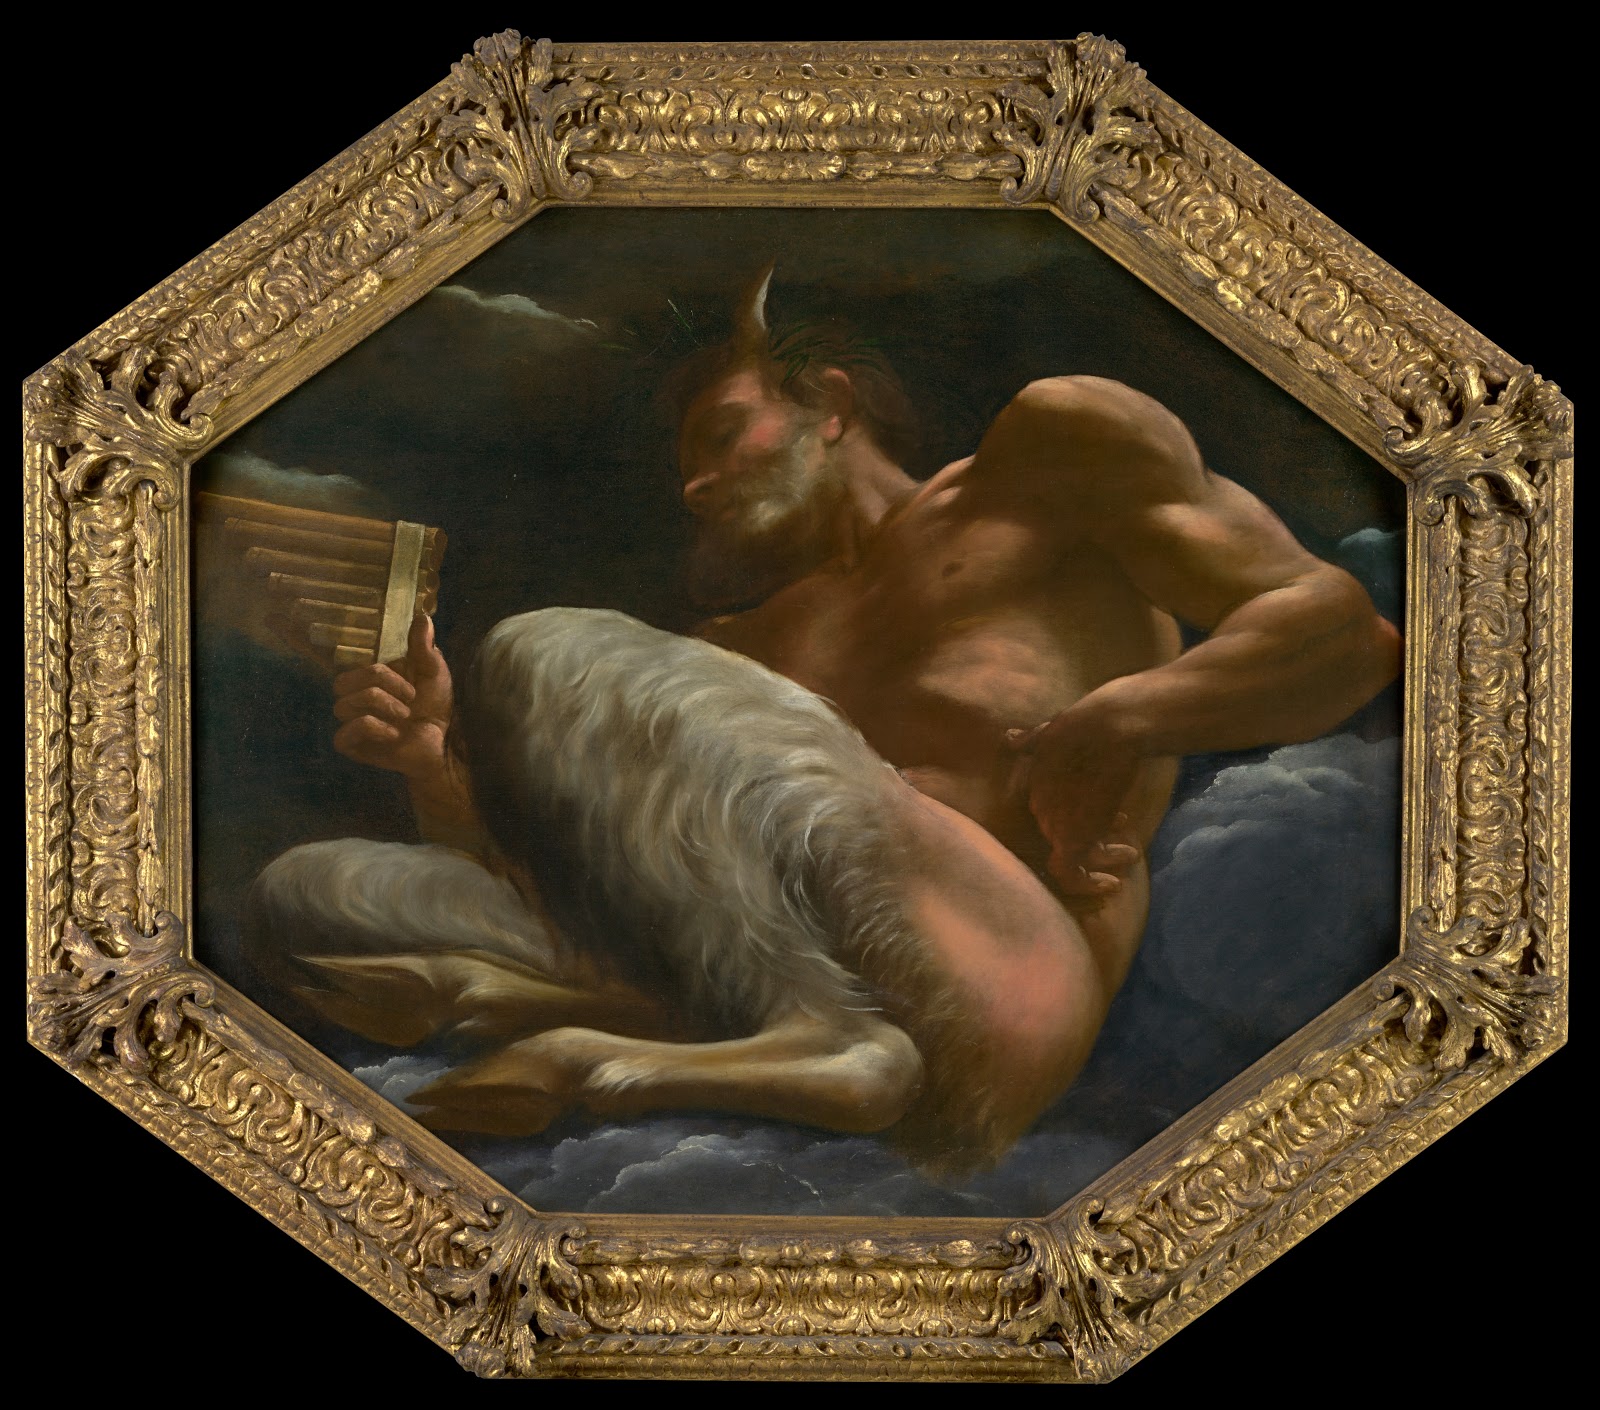 Annibale+Carracci-1560-1609 (31).jpg